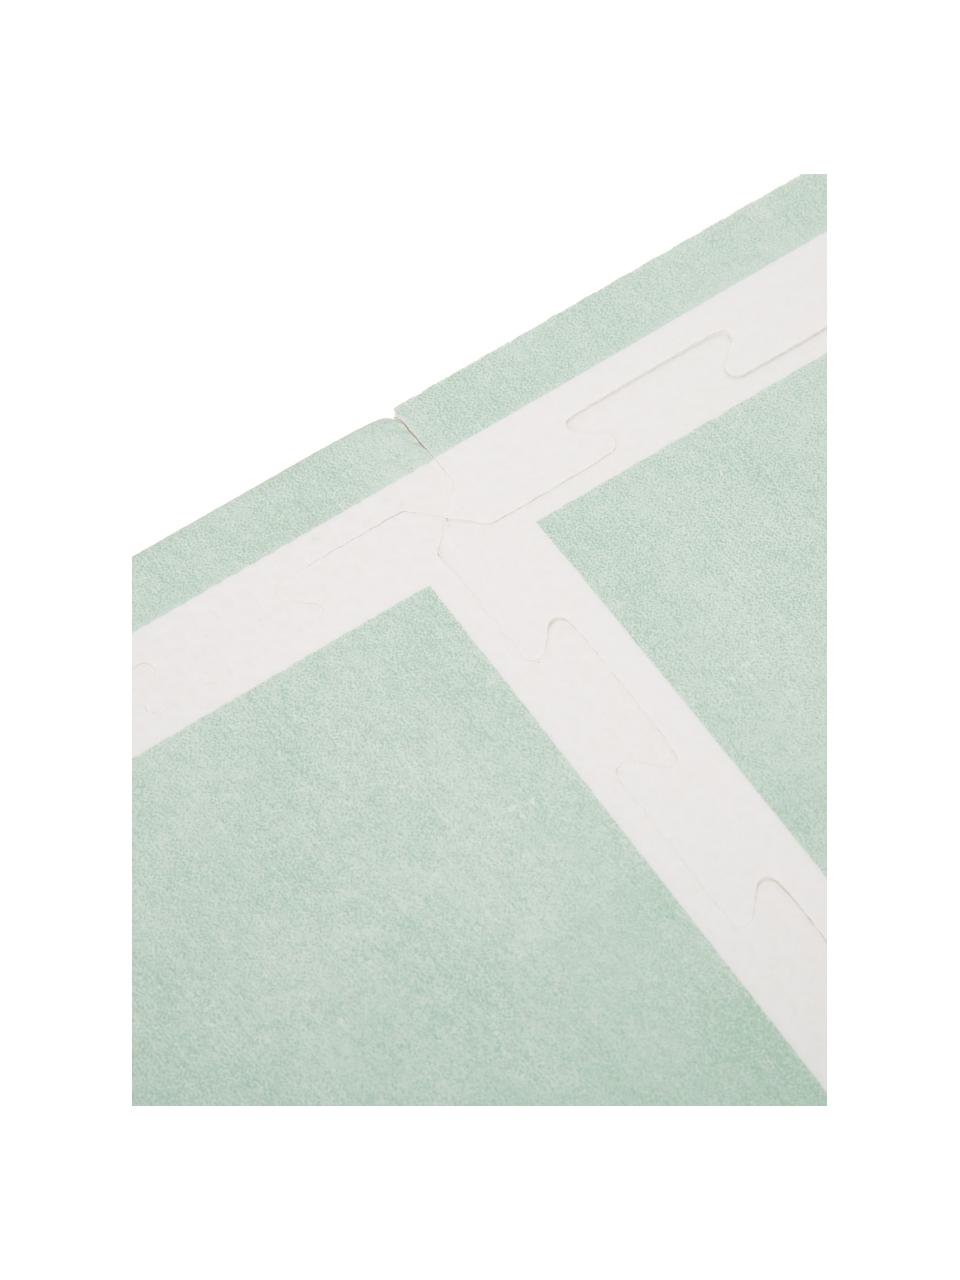 Speelmatset Nordic, 18-delig, Schuimstof (EVAC), vrij van schadelijke stoffen, Groen, crèmekleurig, B 120 x L 180 cm